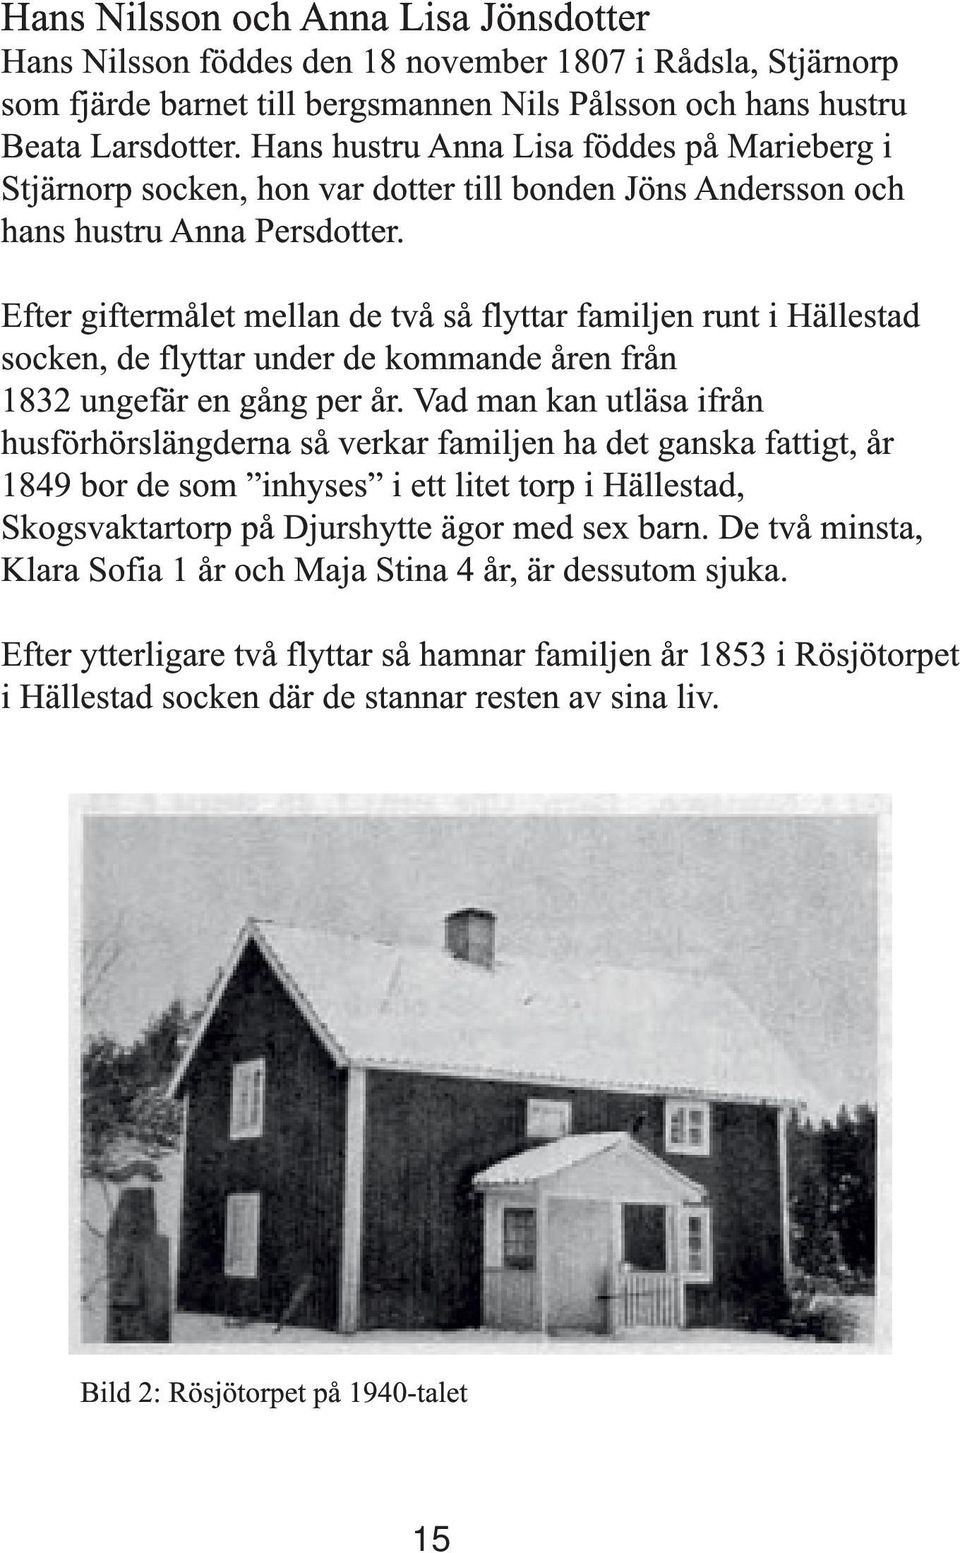 Efter giftermålet mellan de två så flyttar familjen runt i Hällestad socken, de flyttar under de kommande åren från 1832 ungefär en gång per år.